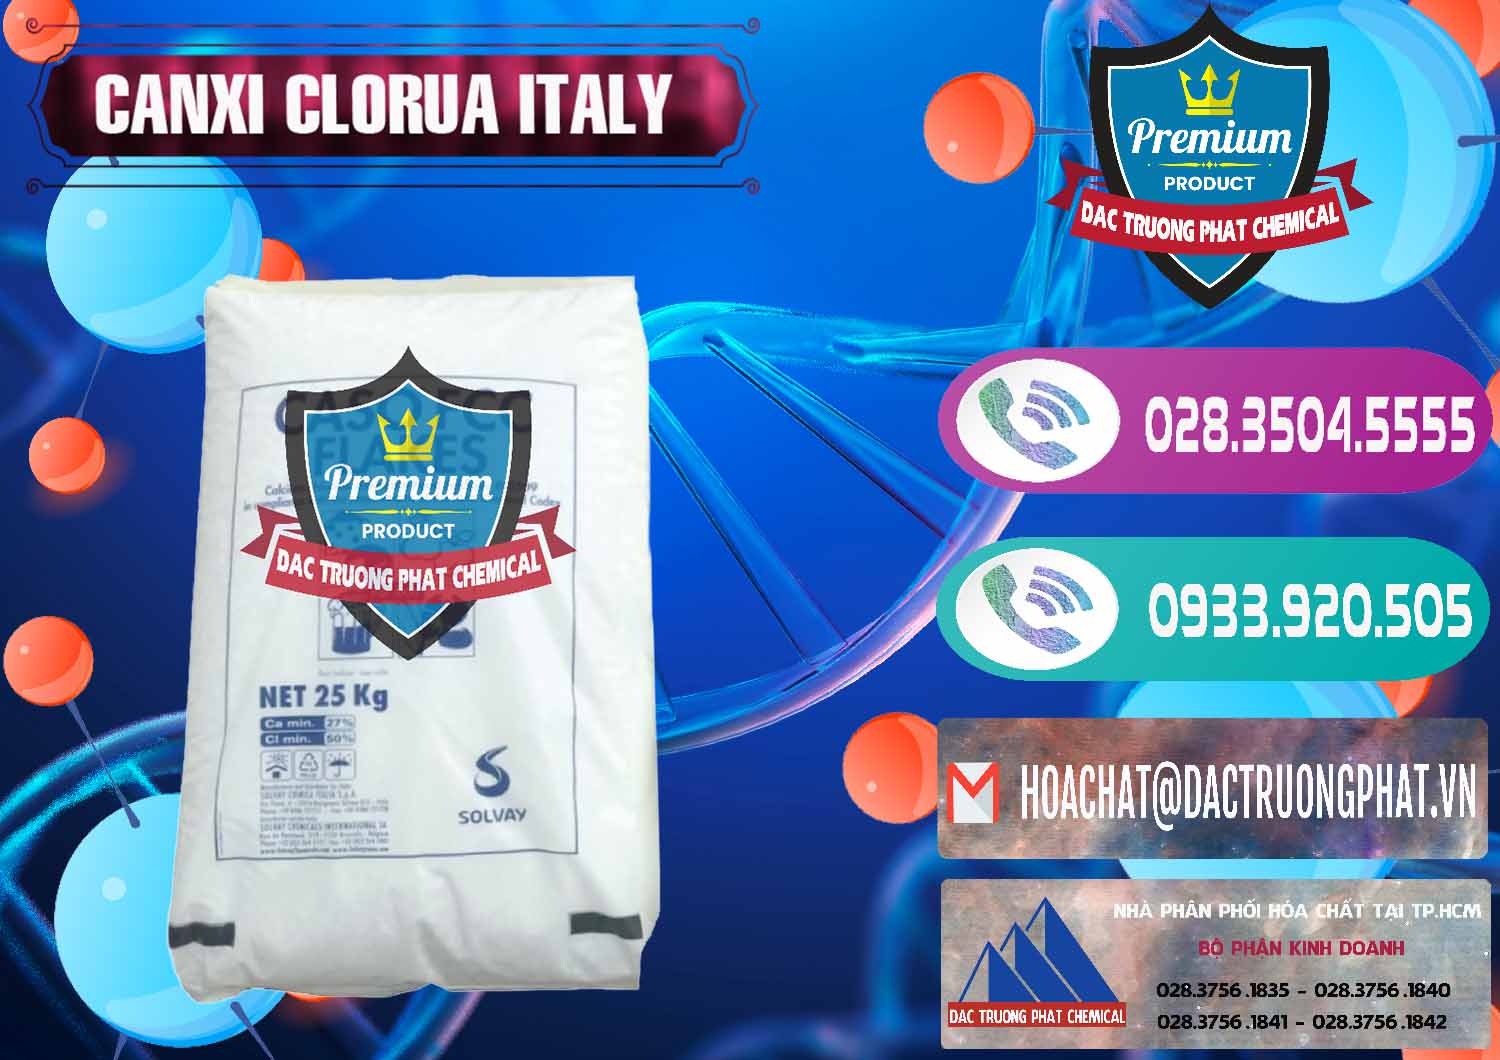 Nơi chuyên bán ( cung cấp ) CaCl2 – Canxi Clorua Food Grade Ý Italy - 0435 - Đơn vị chuyên cung cấp ( bán ) hóa chất tại TP.HCM - hoachatxulynuoc.com